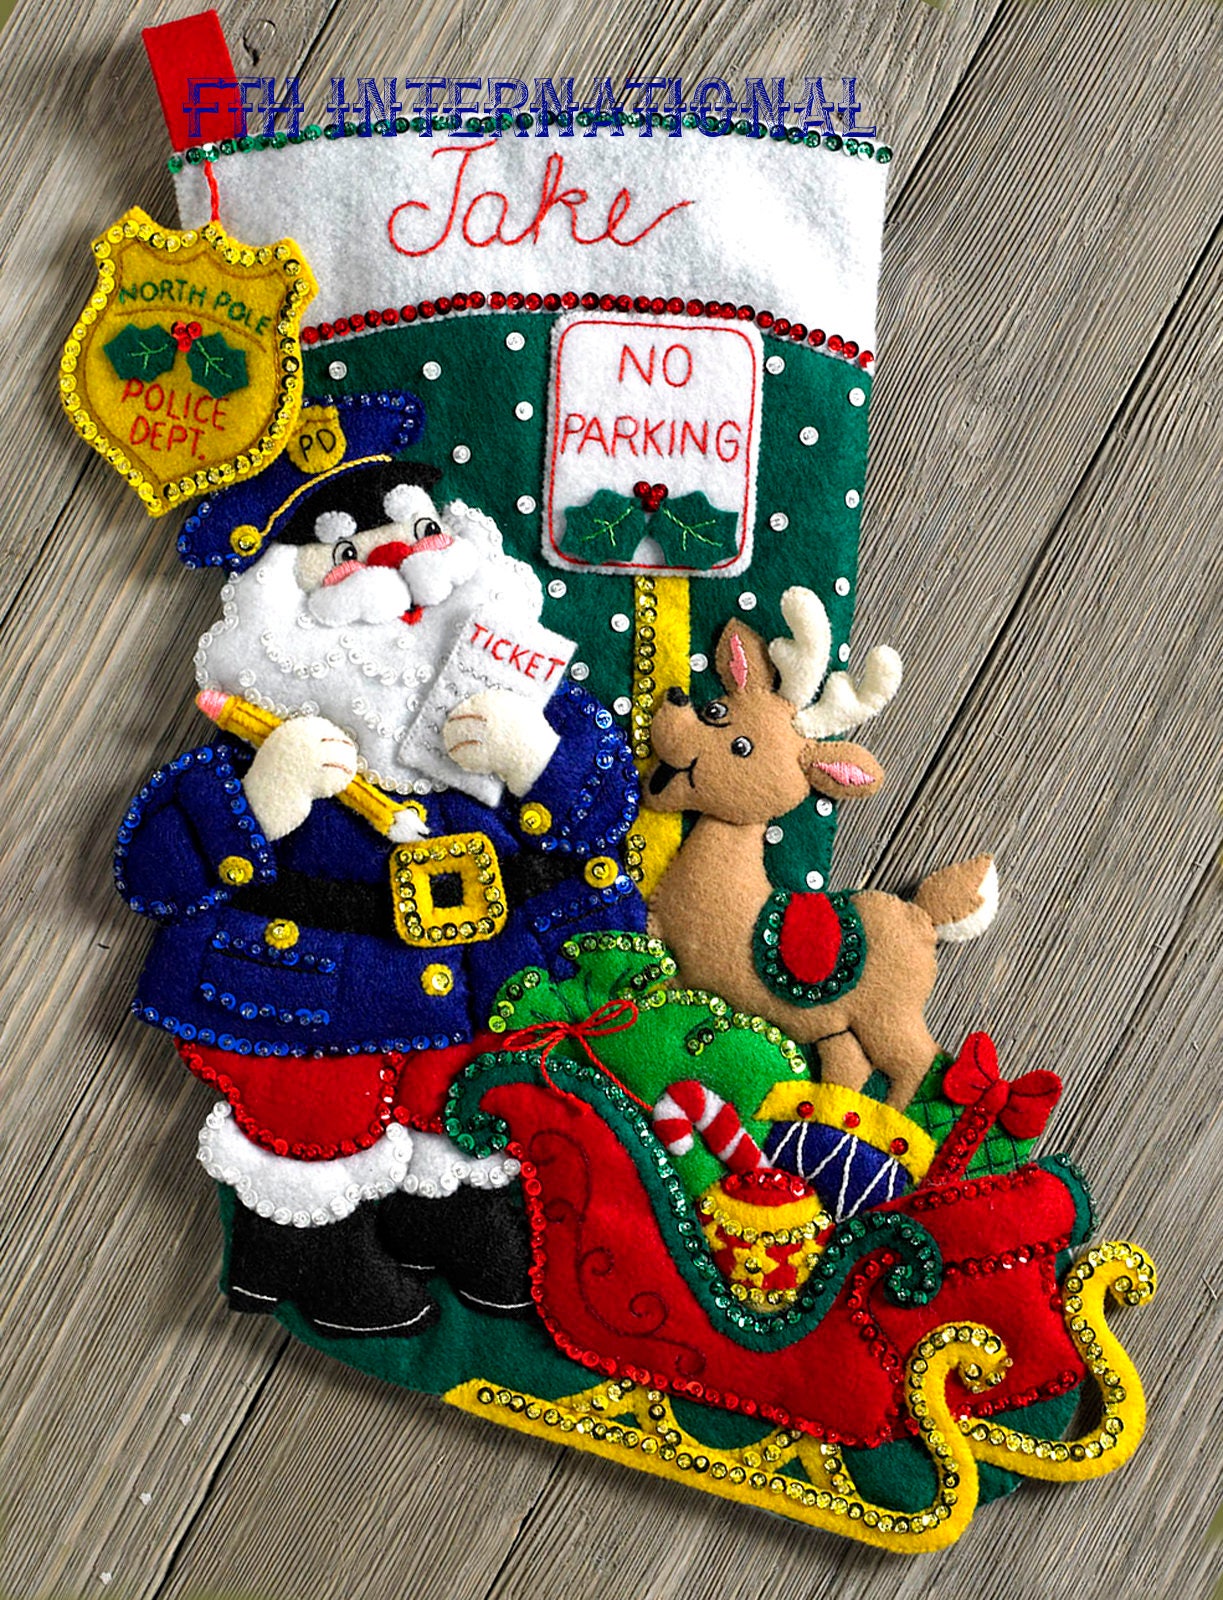 Bucilla Ornamental Reindeer 18 Felt Christmas Stocking Kit 86652 DIY 